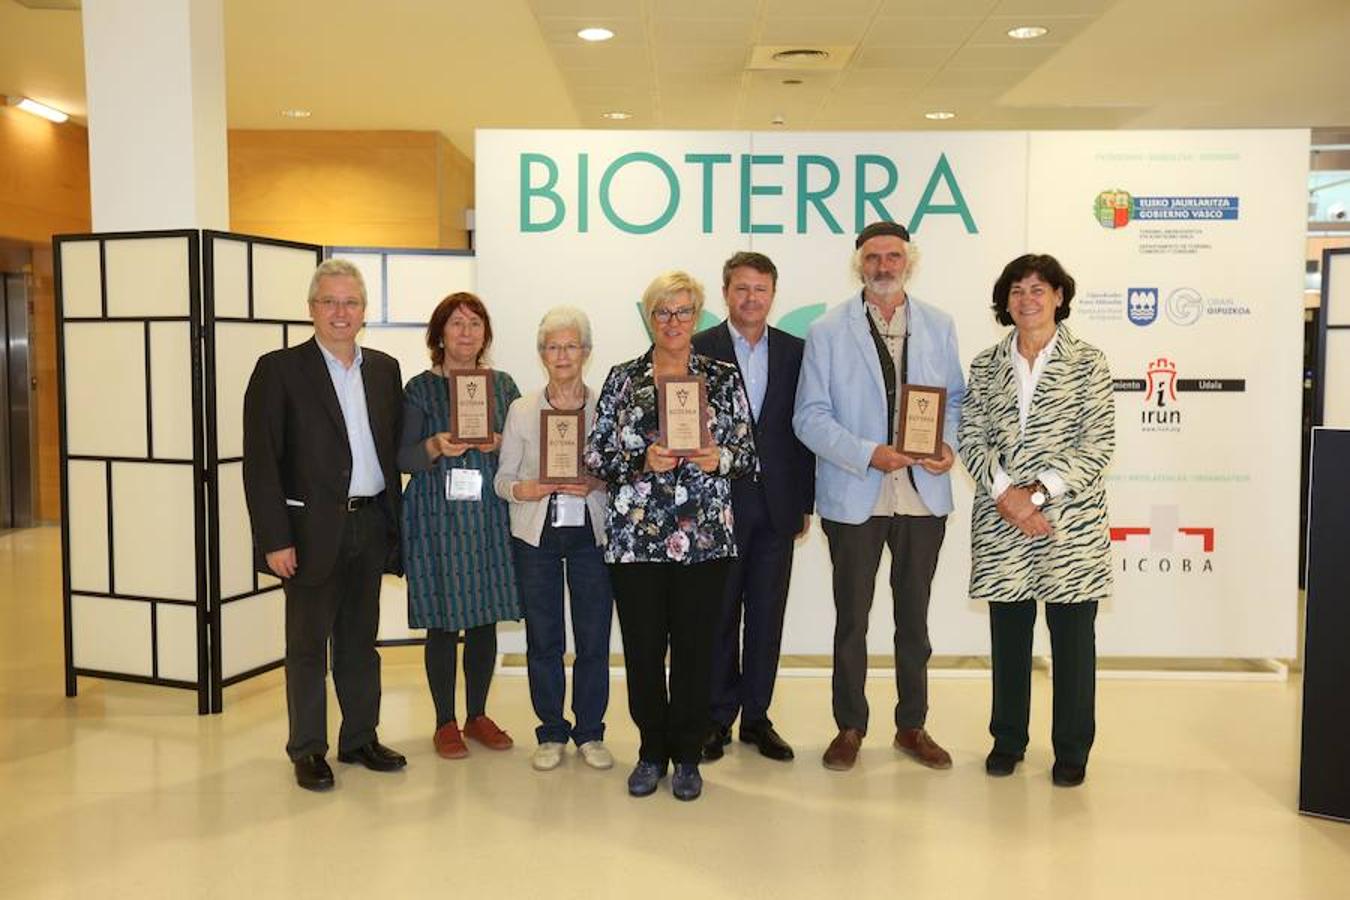 Este año Bioterra vuelve a acercar productos y servicios ecológicos y sostenibles. Su rigor, variedad y sus actividades complementarias hacen que este sea el evento de referencia en Euskadi. 